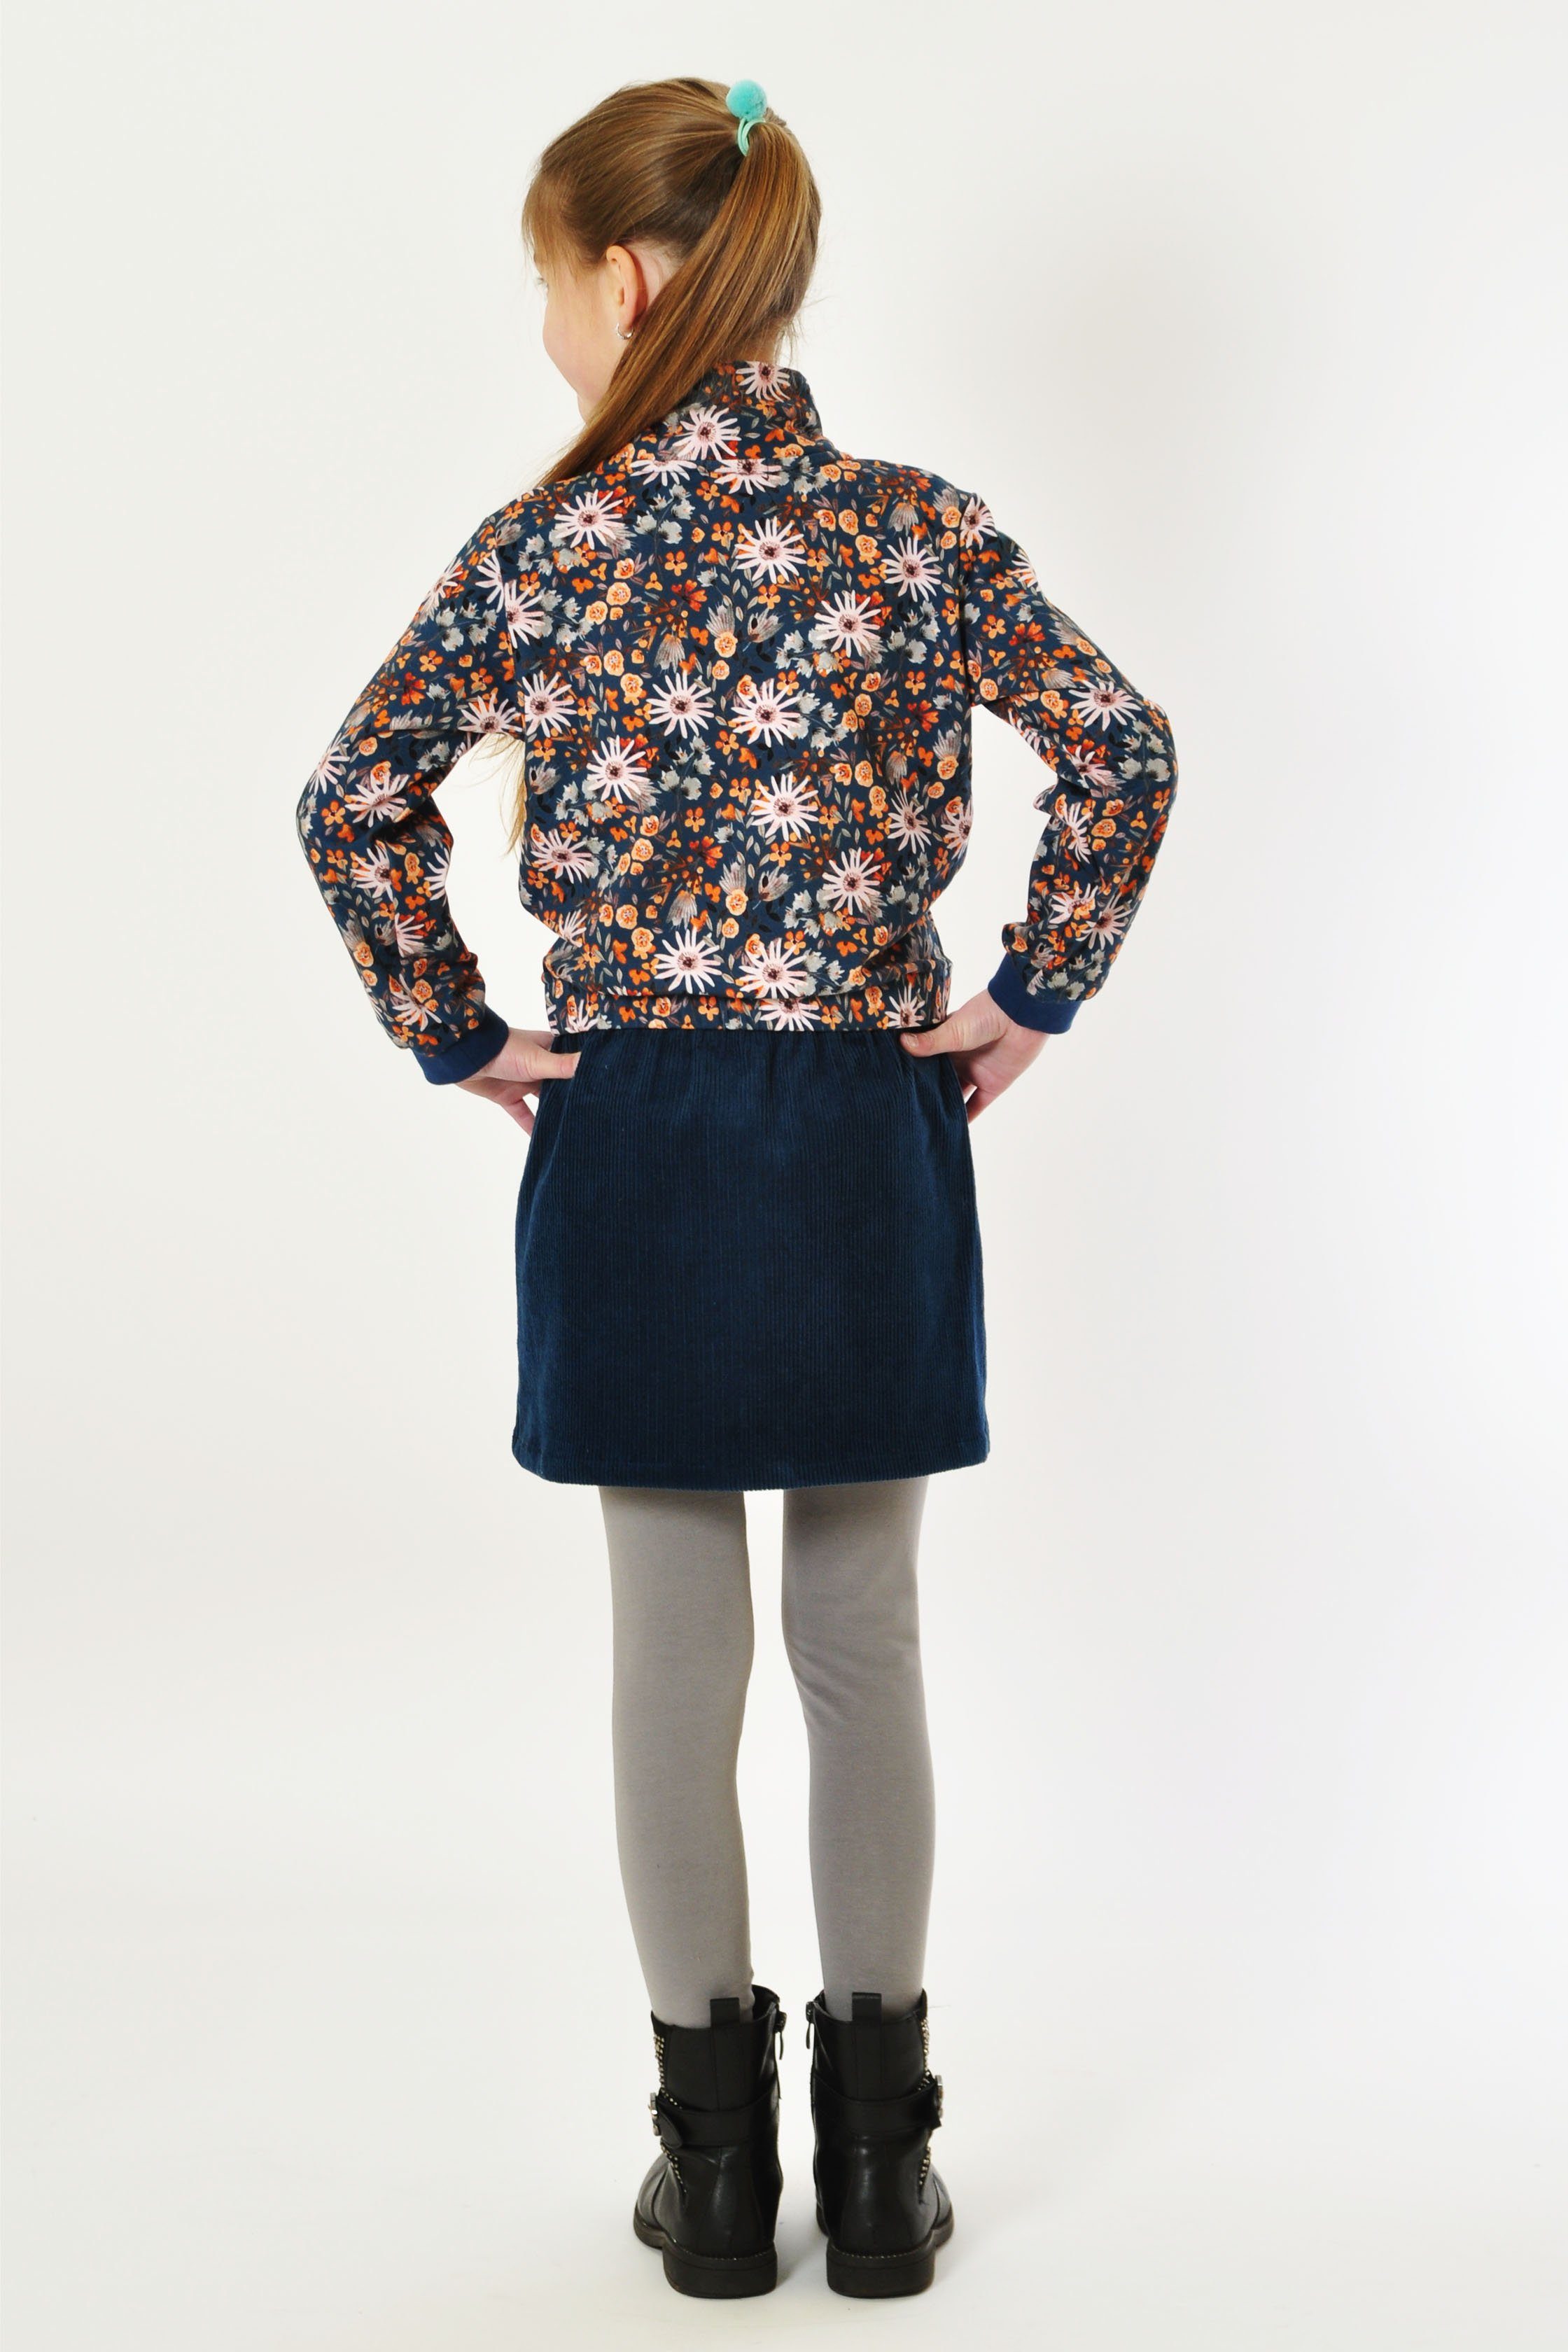 coolismo Sweatshirt Sweater für Mädchen blau Produktion Motivdruck Baumwolle, mit europäische Blumen